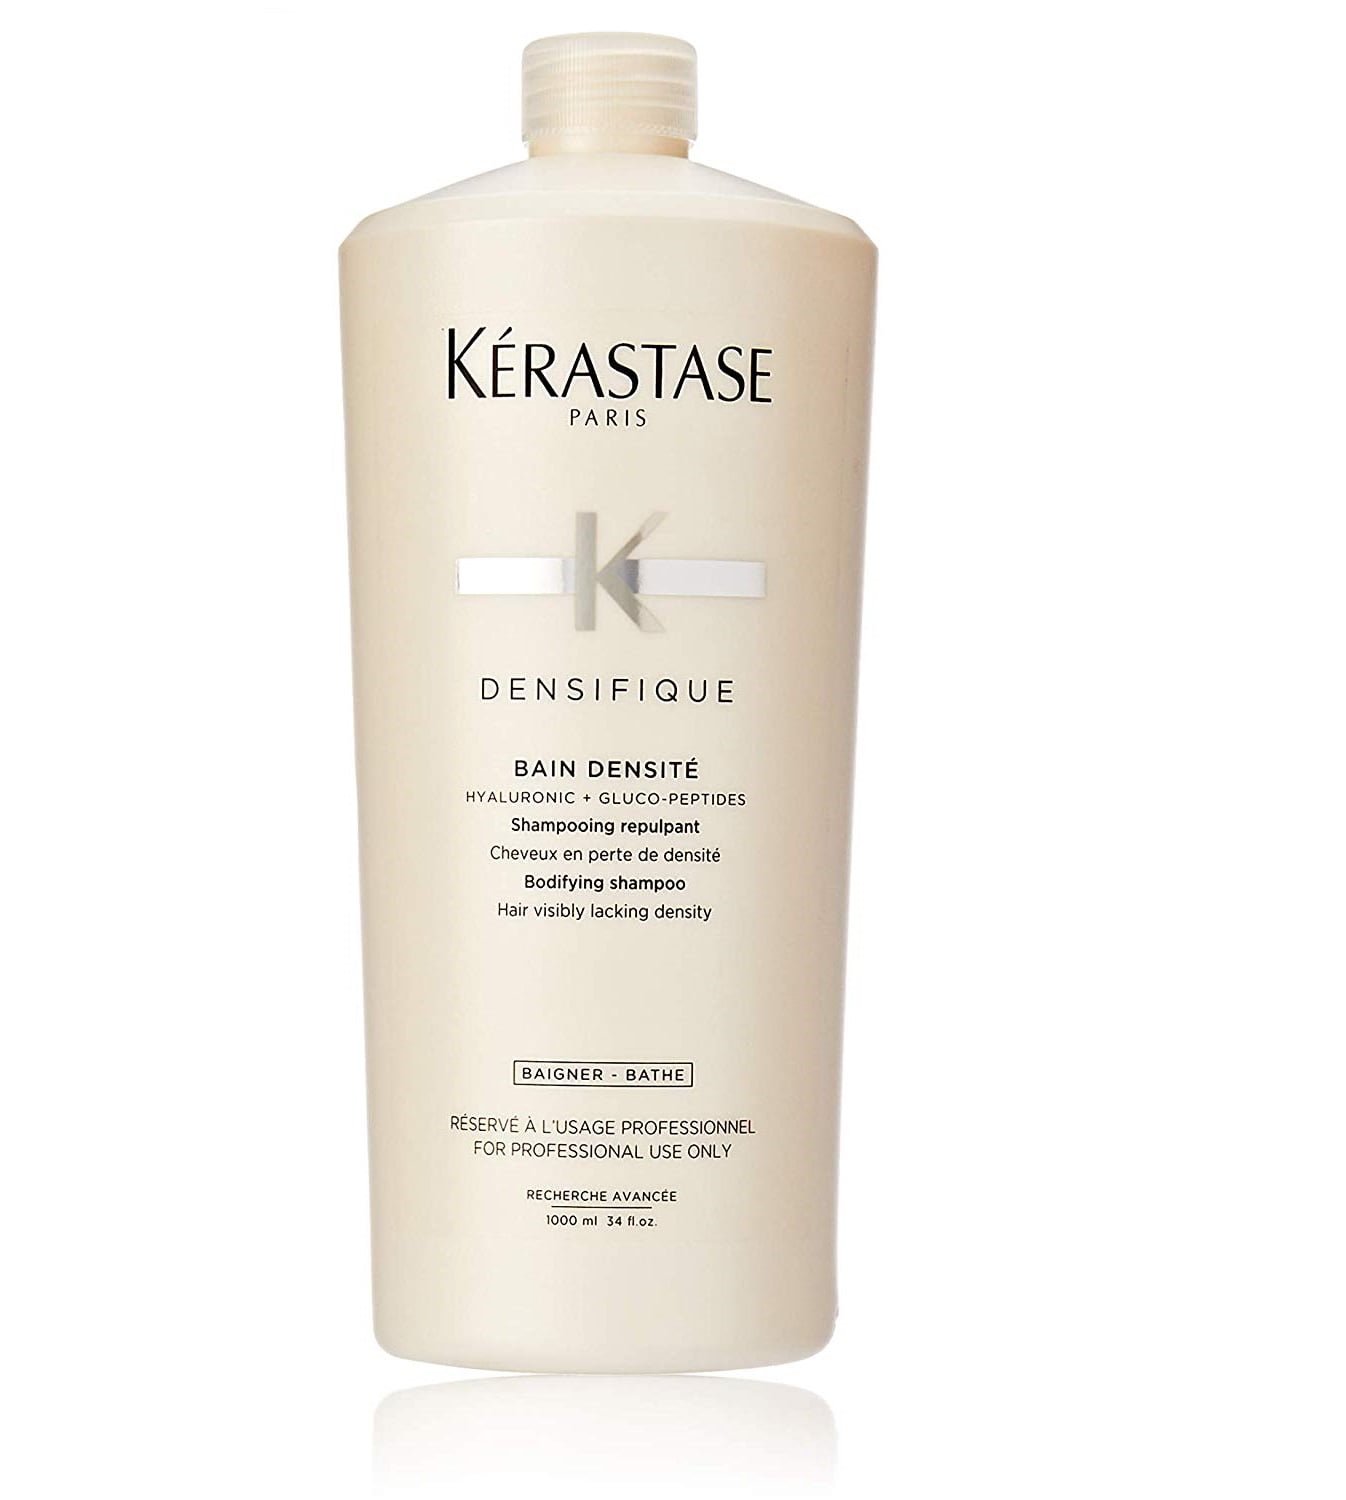 Kerastase Densifique Bain Densite Shampoo, 34 oz - Walmart.com